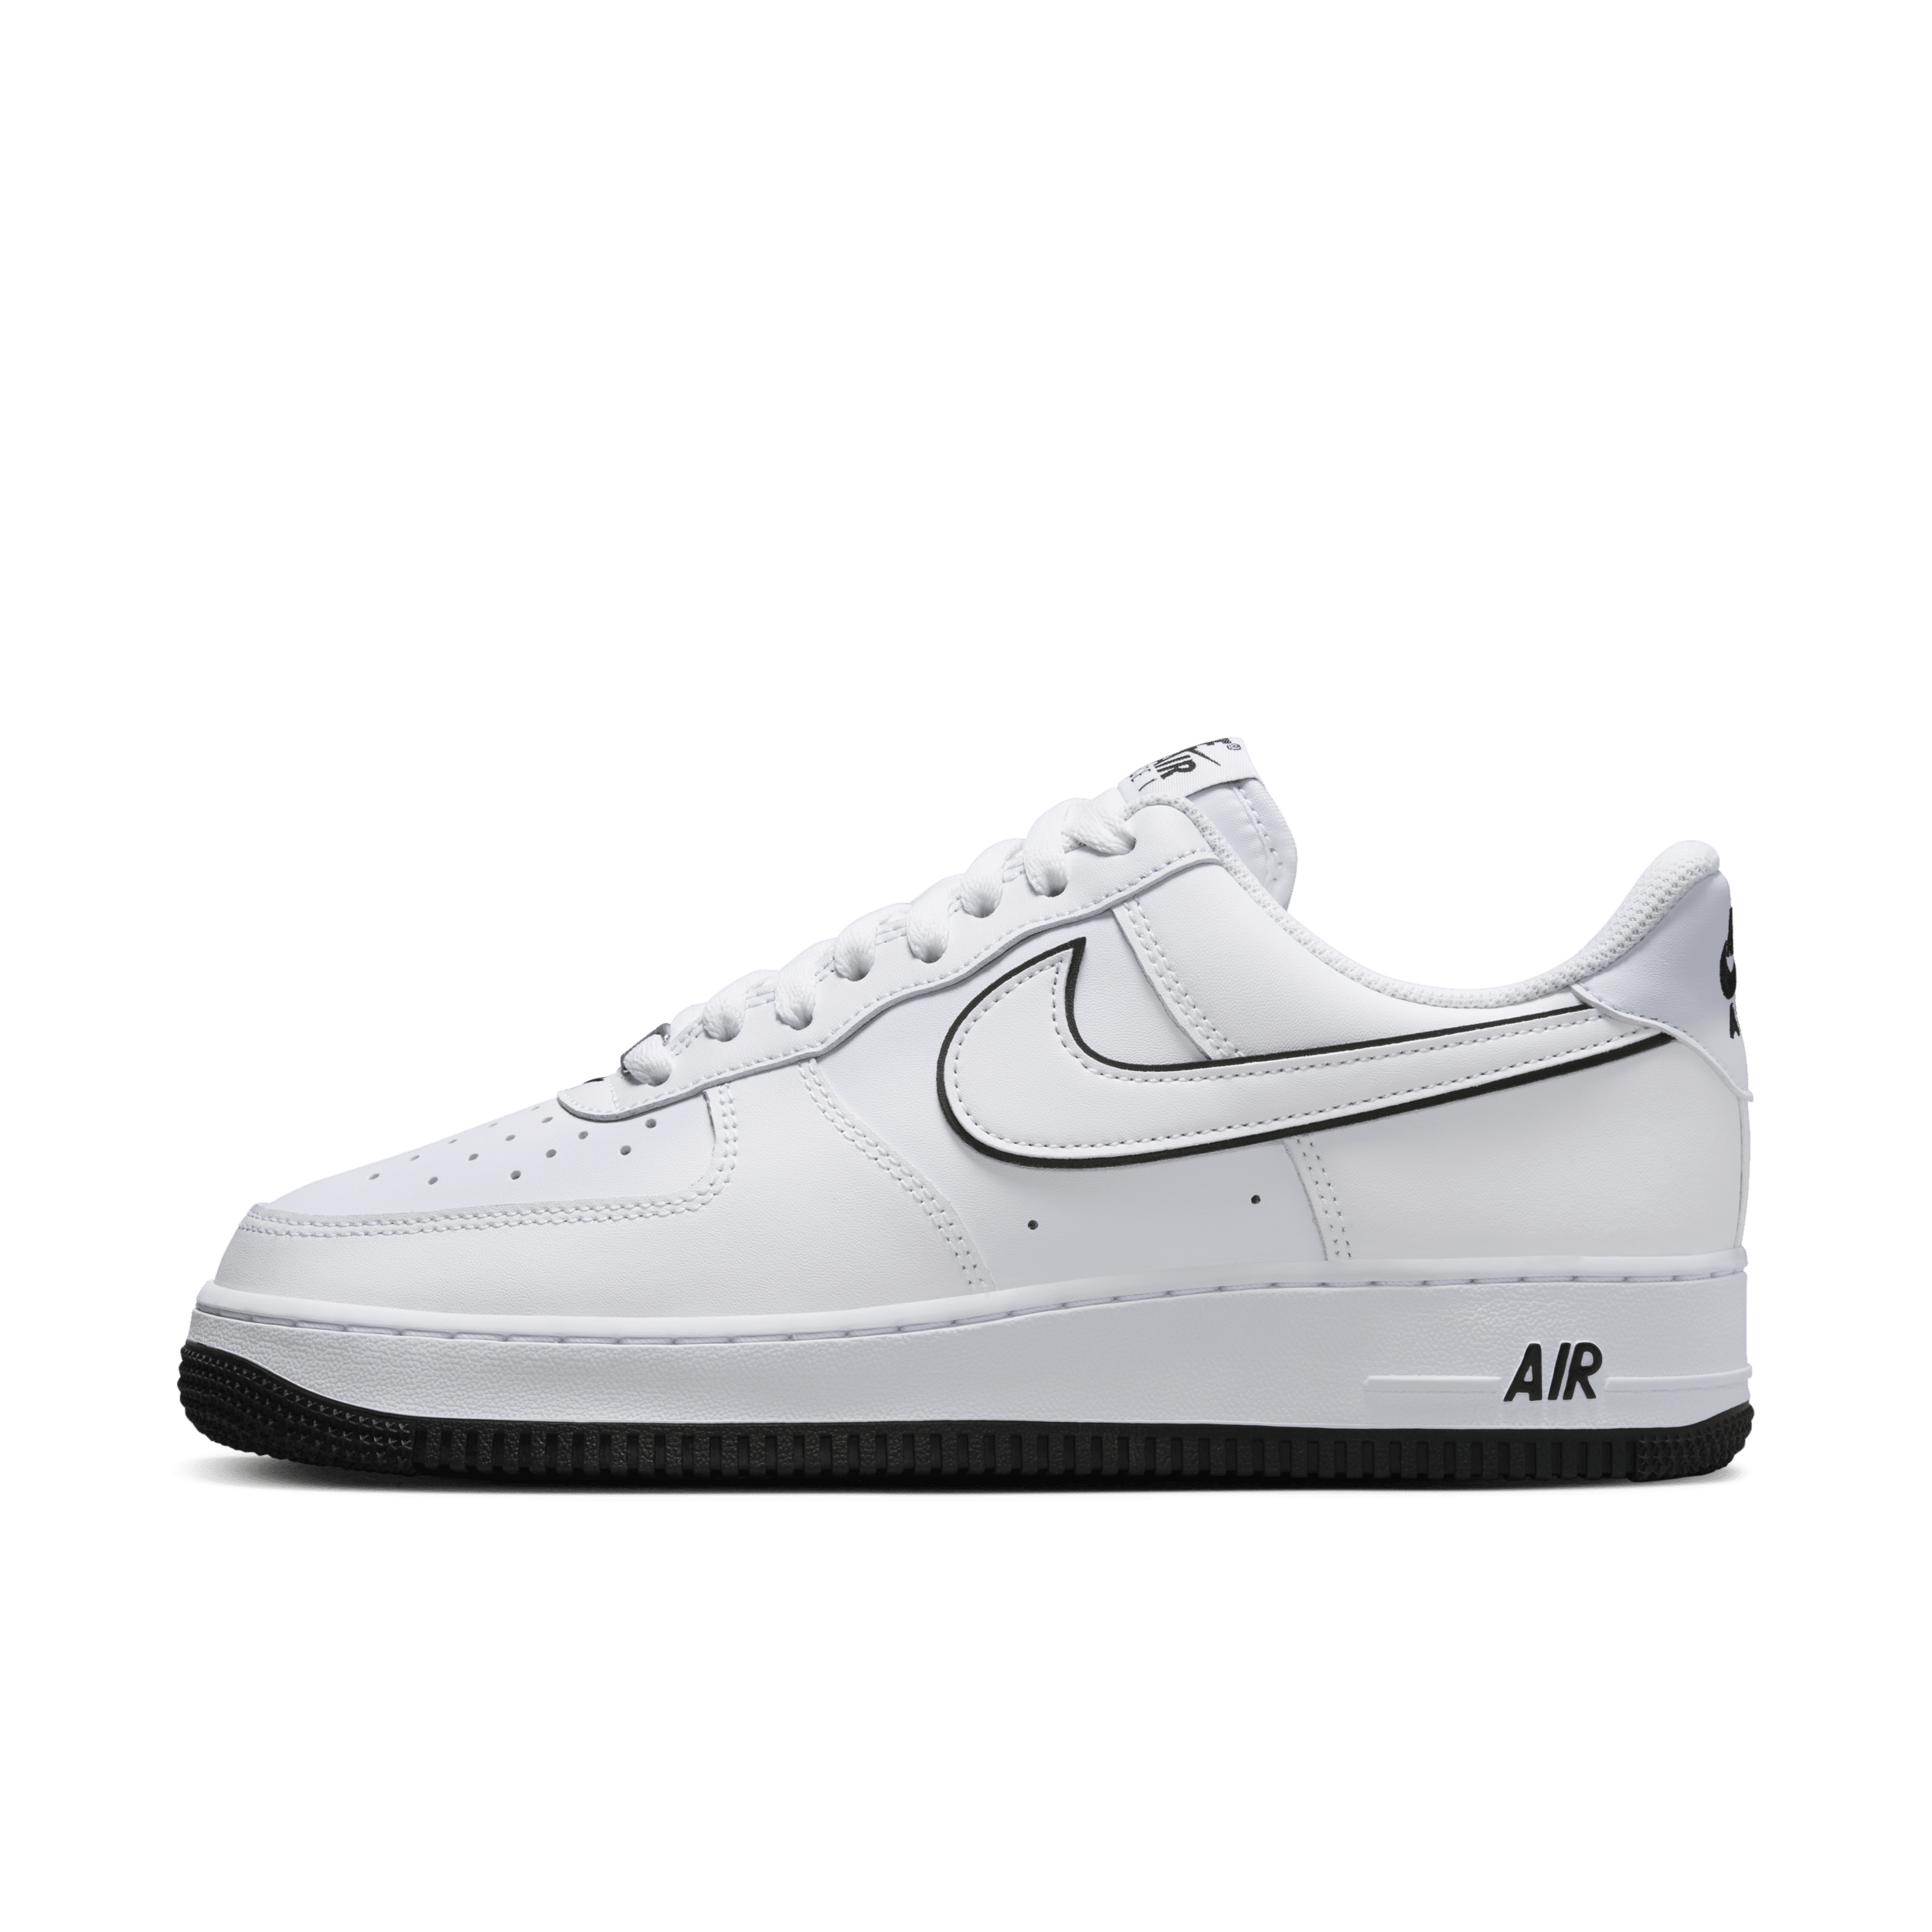 Nike Air Force 1 '07 Herrenschuh - Weiß